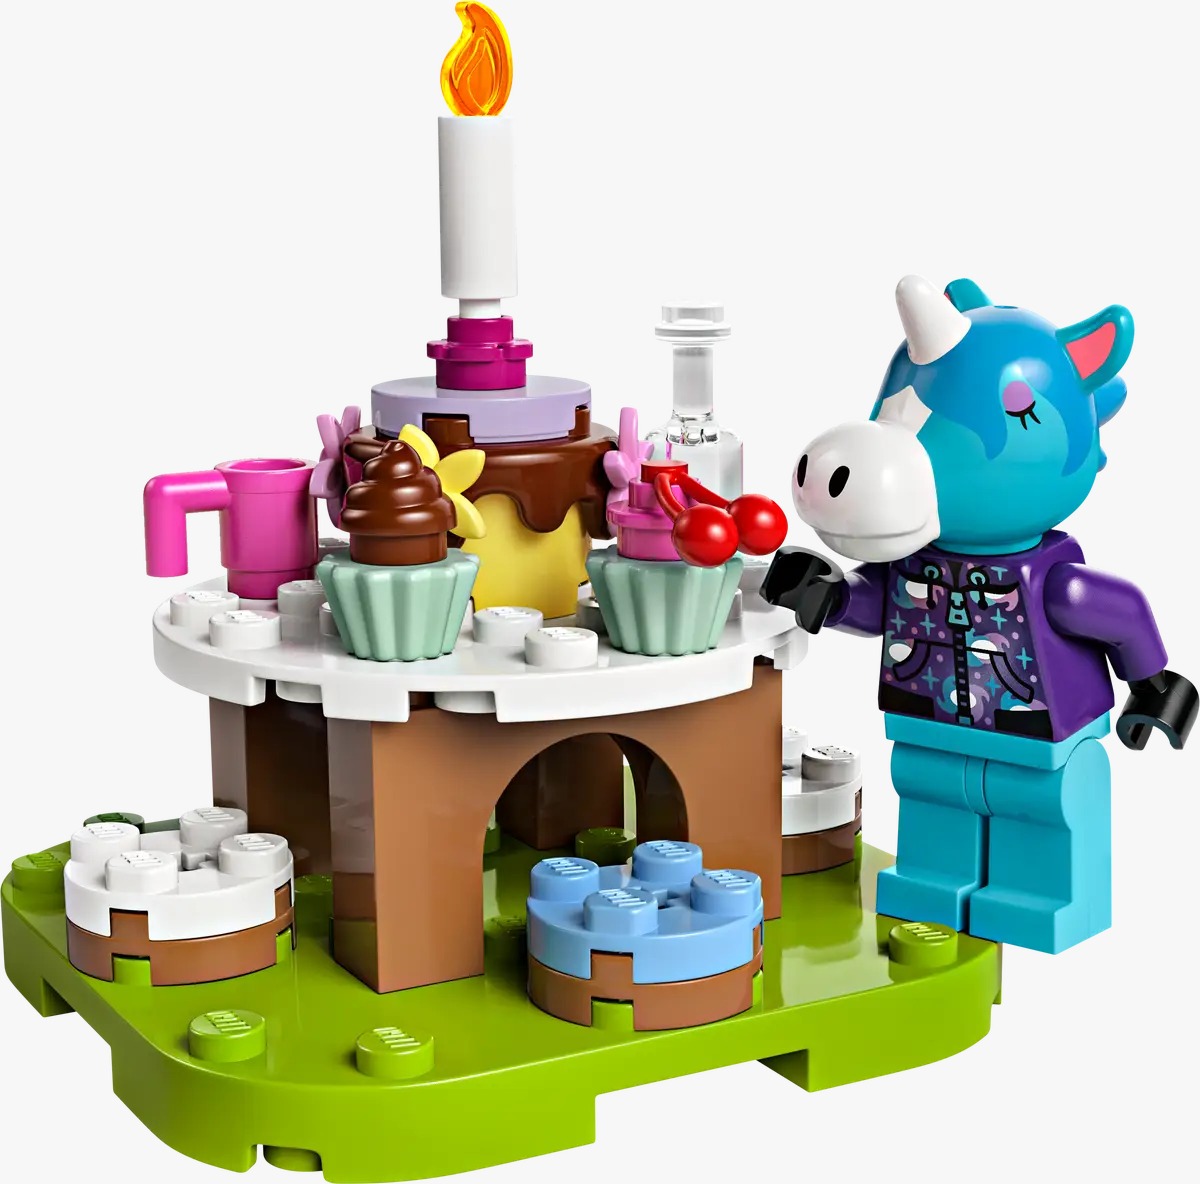 LEGO Animal Crossing: ¡Conoce los 5 nuevos sets! 6